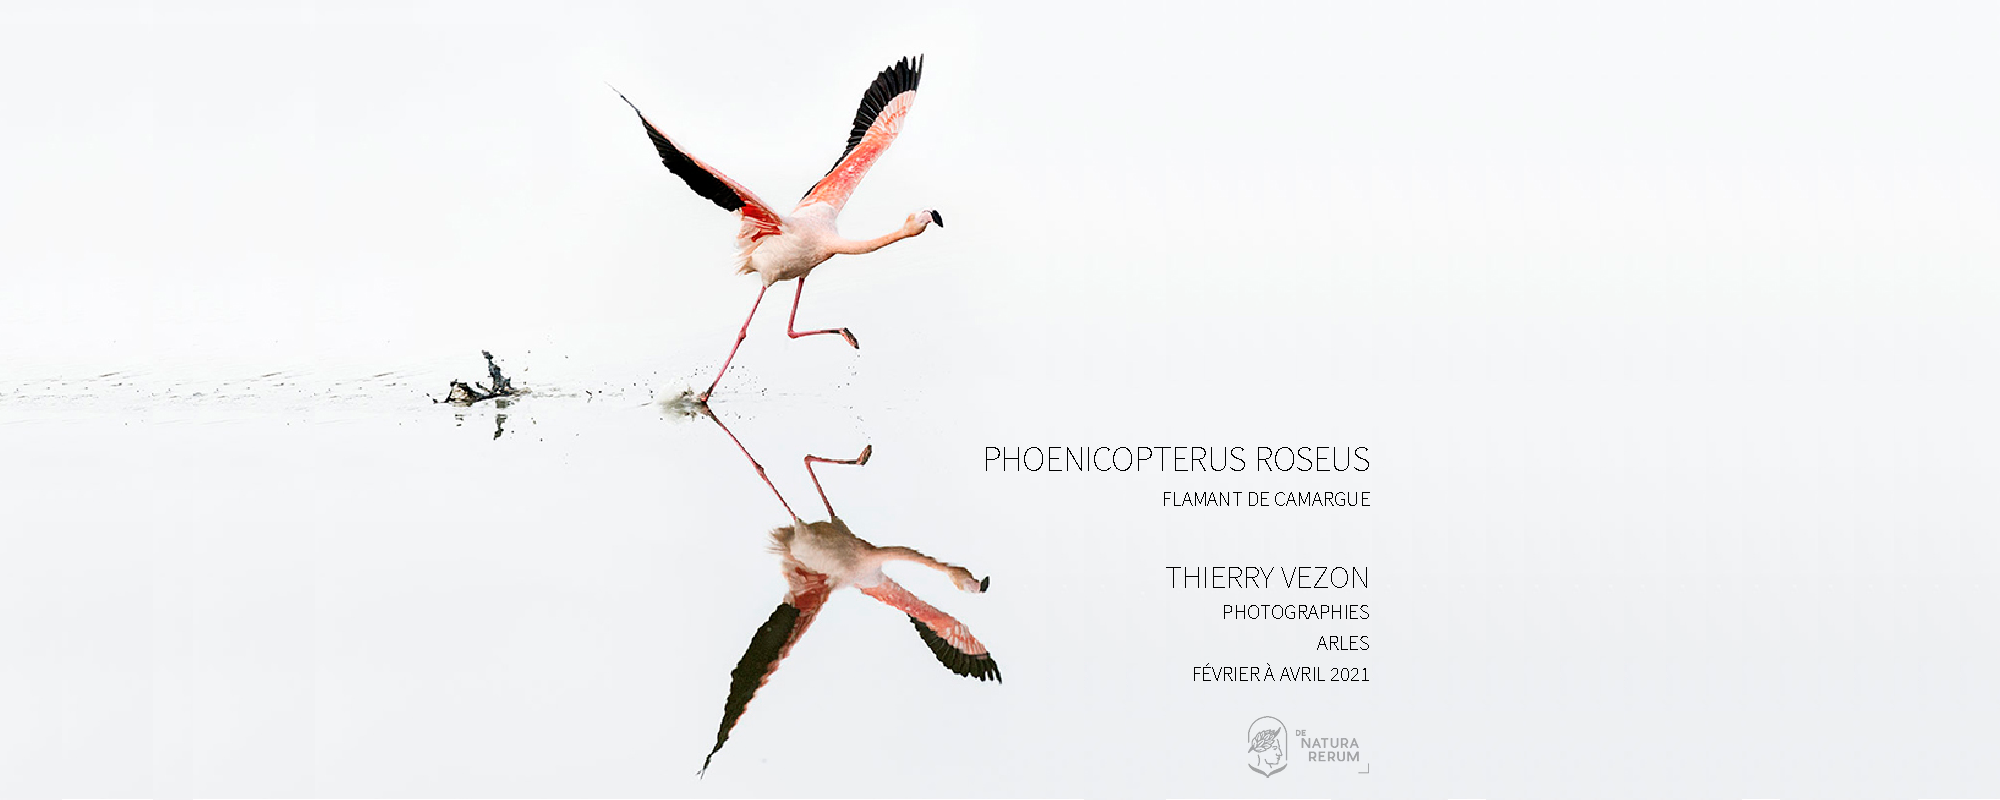 Phoenicopterus roseus Thierry Vezon De natura rerum Arles 2021